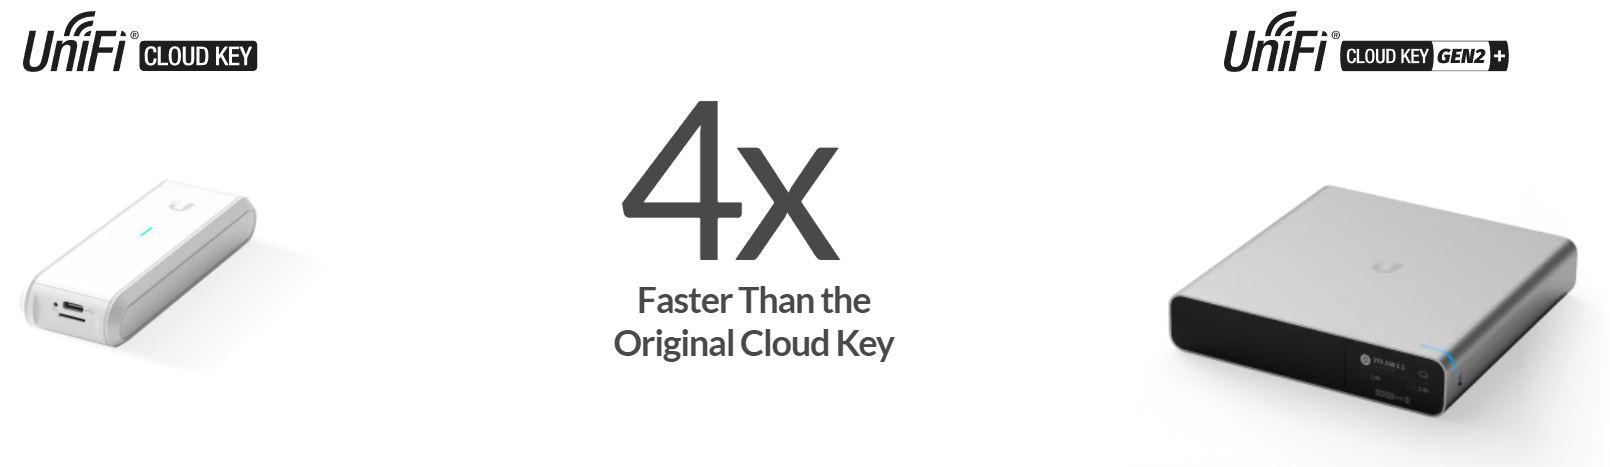 cloud-key-x4.jpg